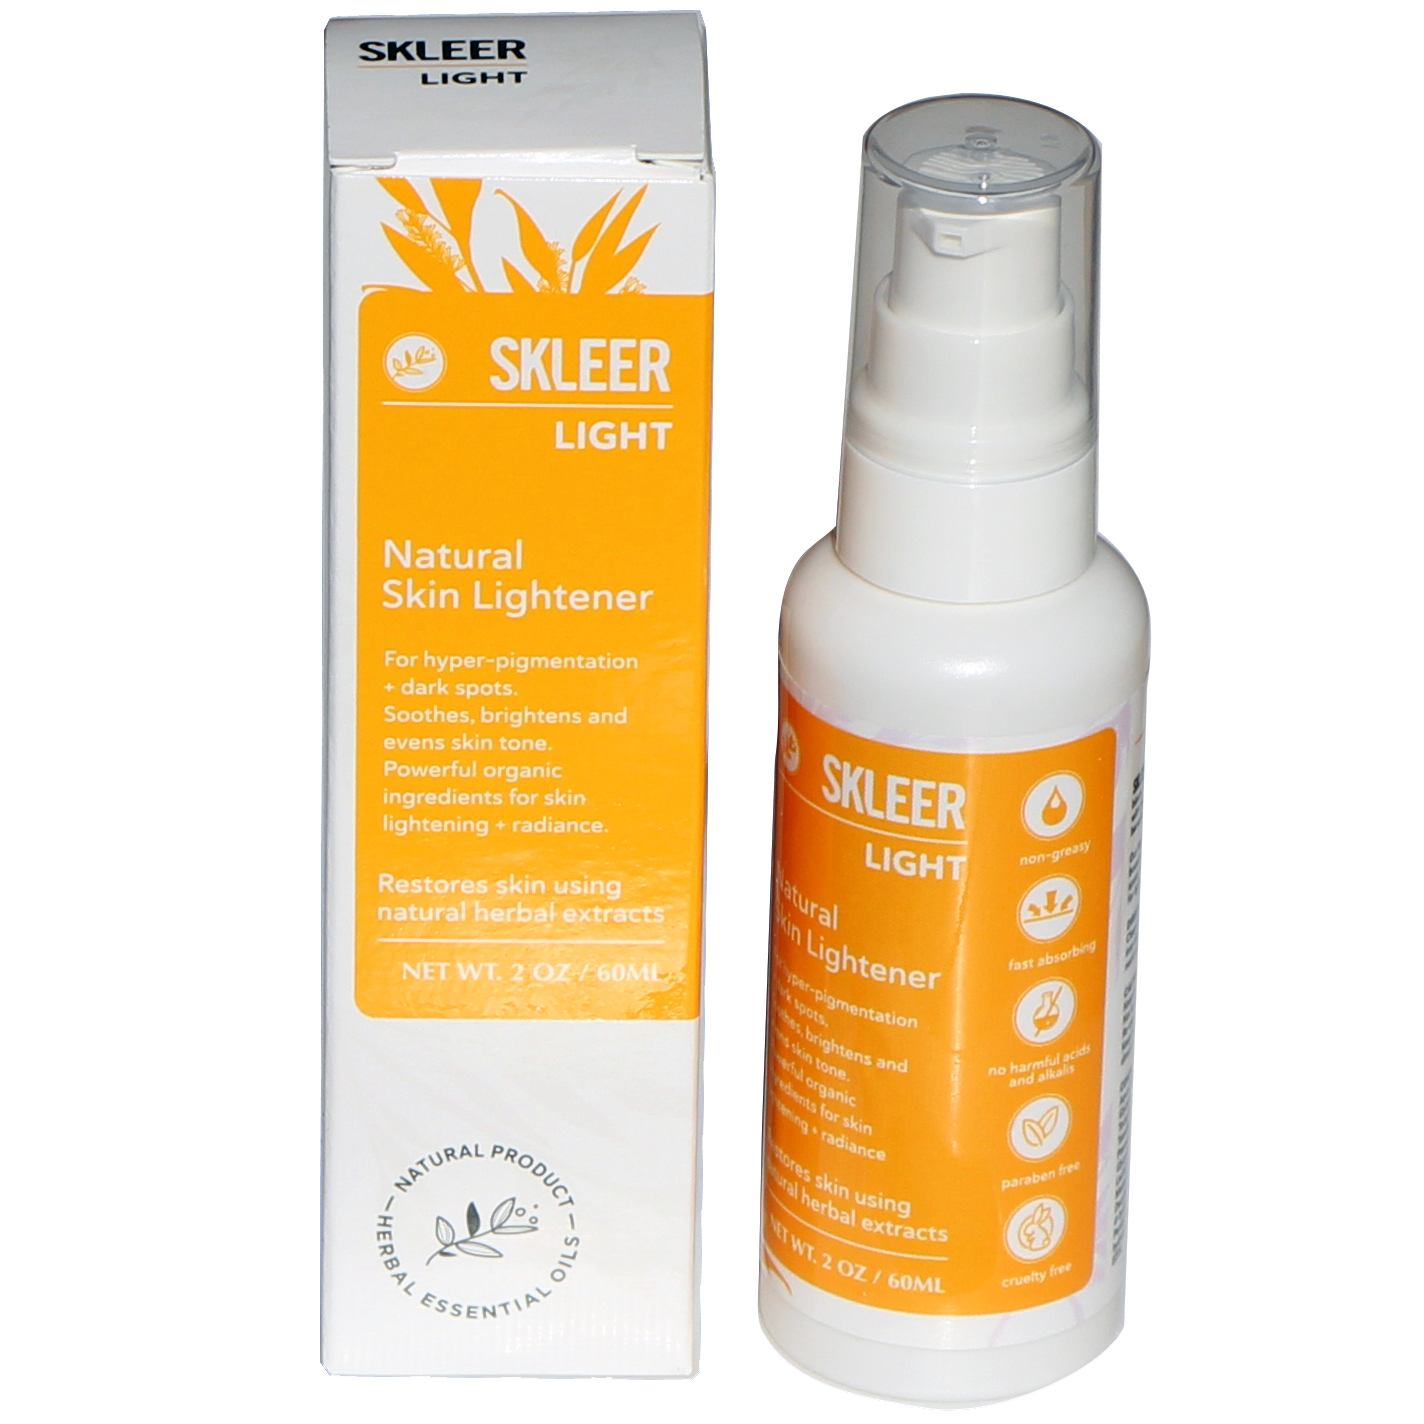 SKLEER Light - Natural Skin Lightener